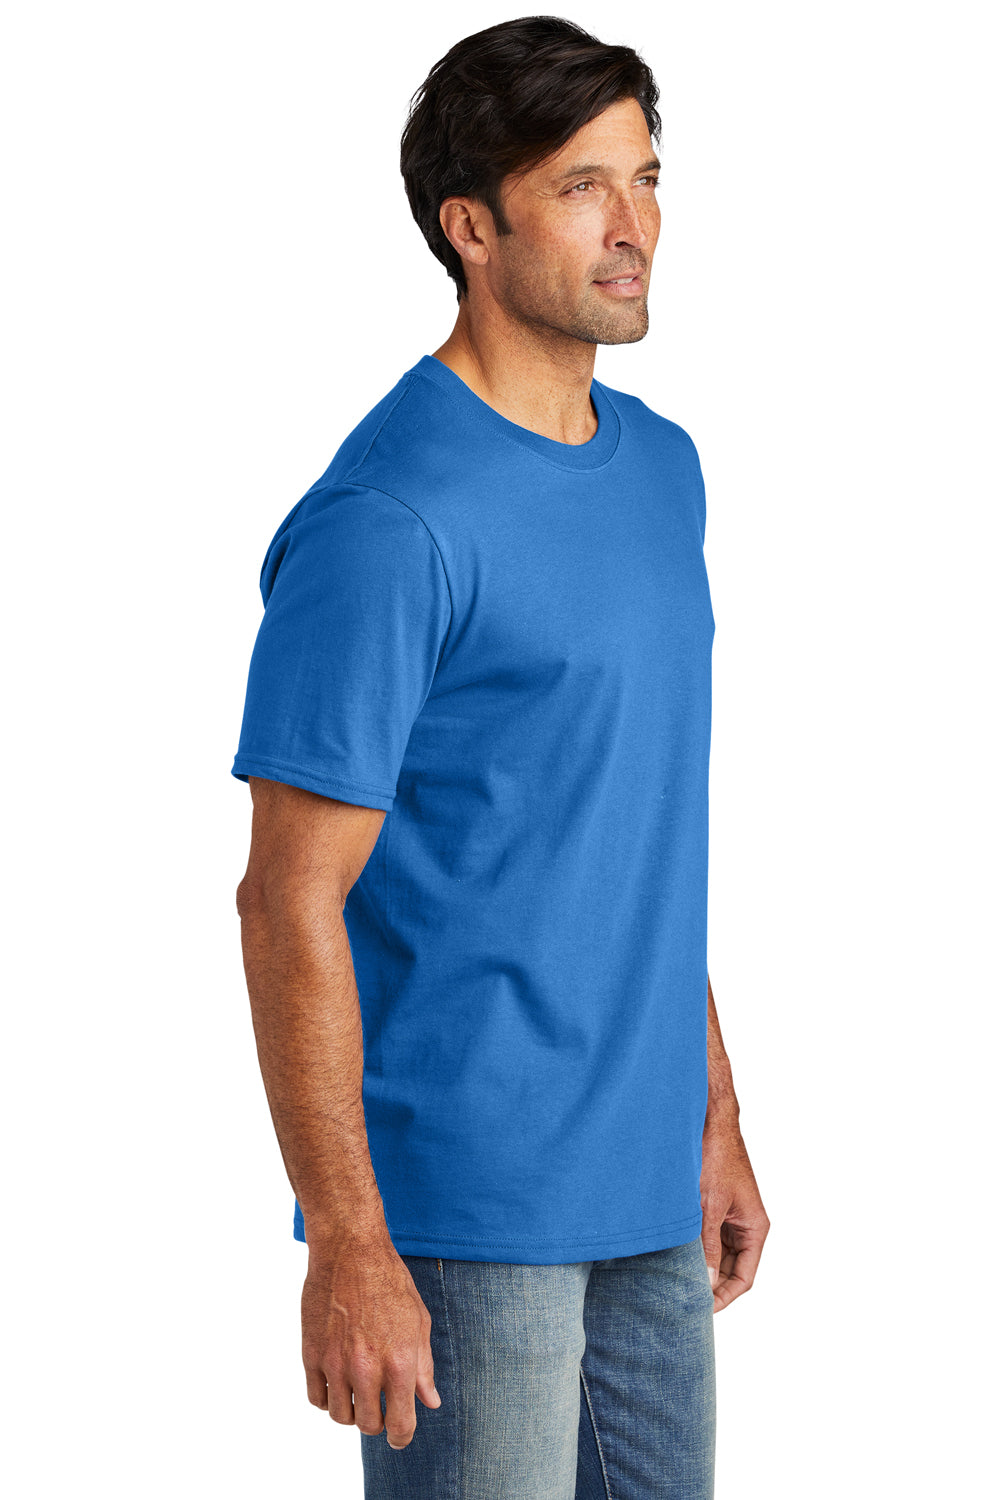 Volunteer Knitwear VL60 Chore Short Sleeve Crewneck T-Shirt True Royal Blue Side